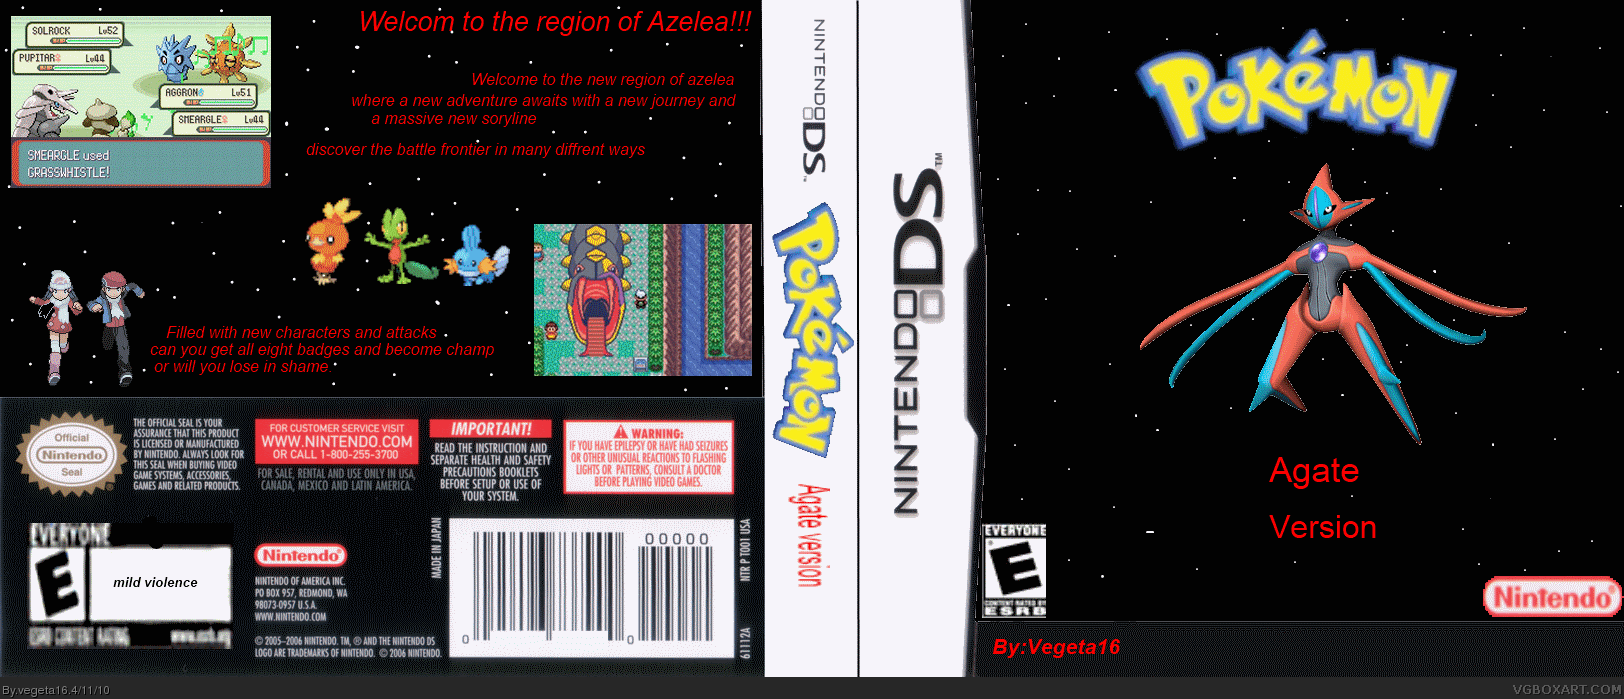 Pokemon Agate box cover